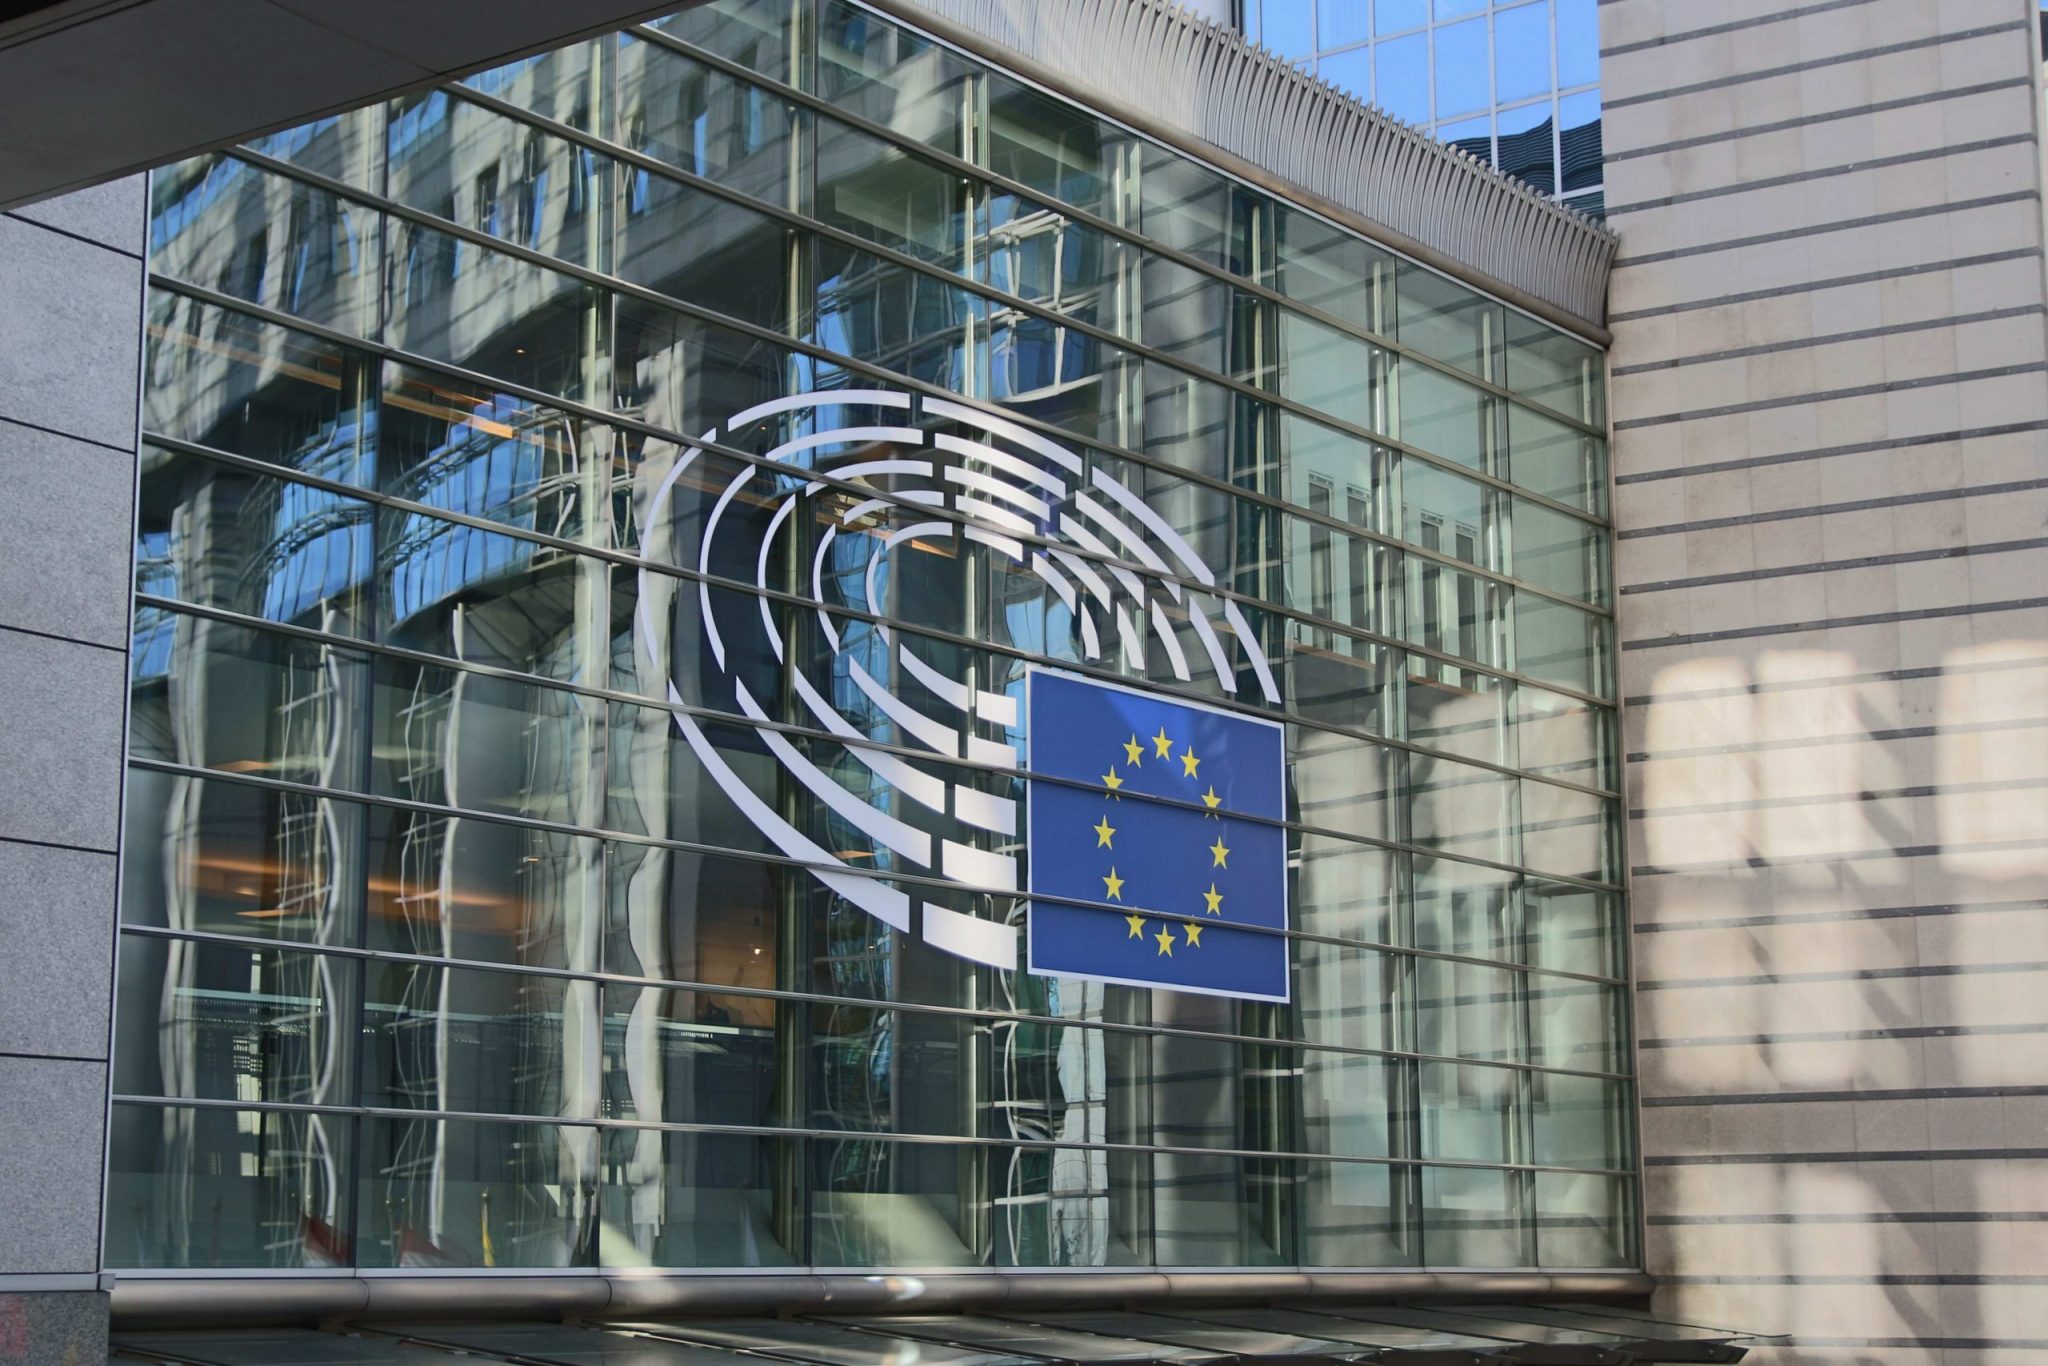 Los reguladores europeos advierten contra la compra de criptomonedas;  los llama "altamente riesgosos"